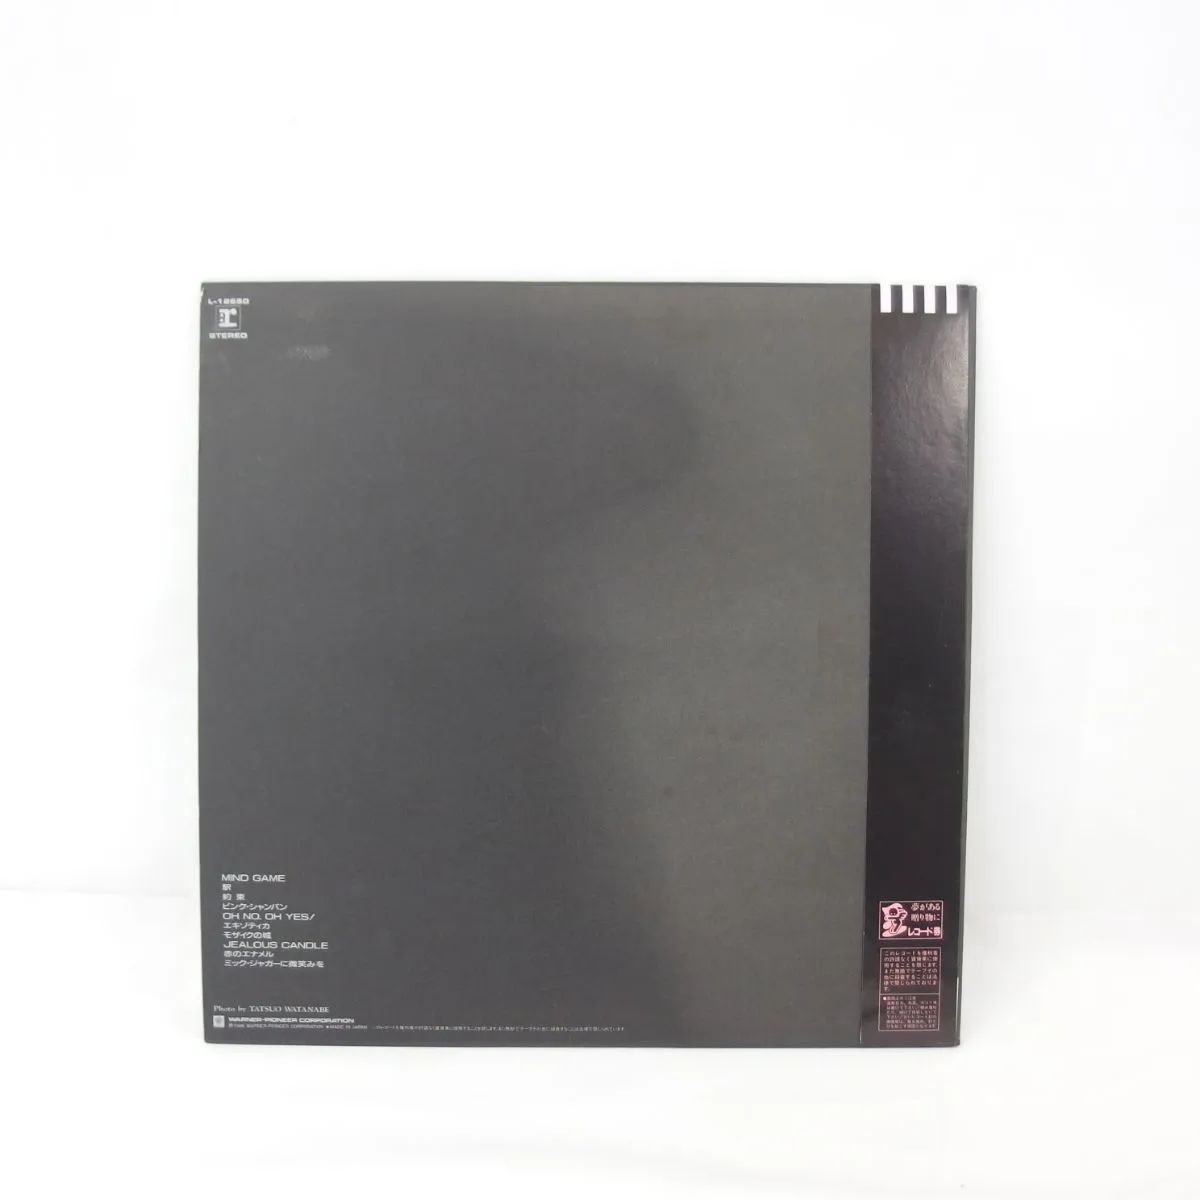 帯付】中森明菜 『クリムゾン』LP レコード L-12650 - WonderREX